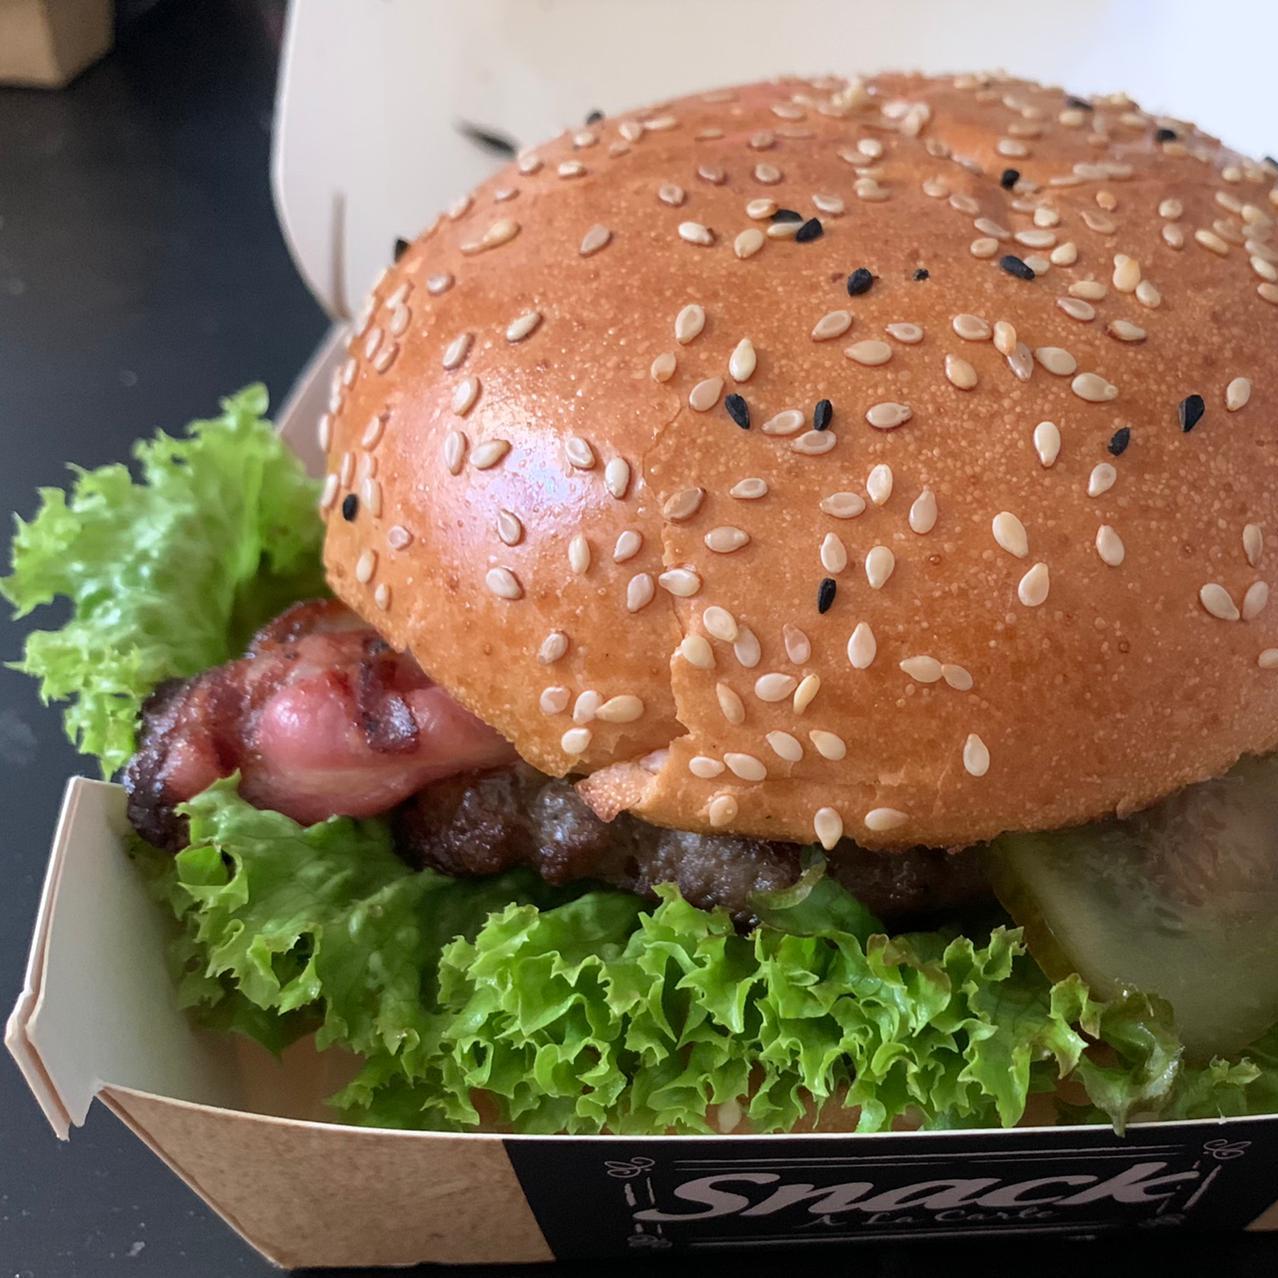 Restaurant "Burger Time" in Brandenburg an der Havel